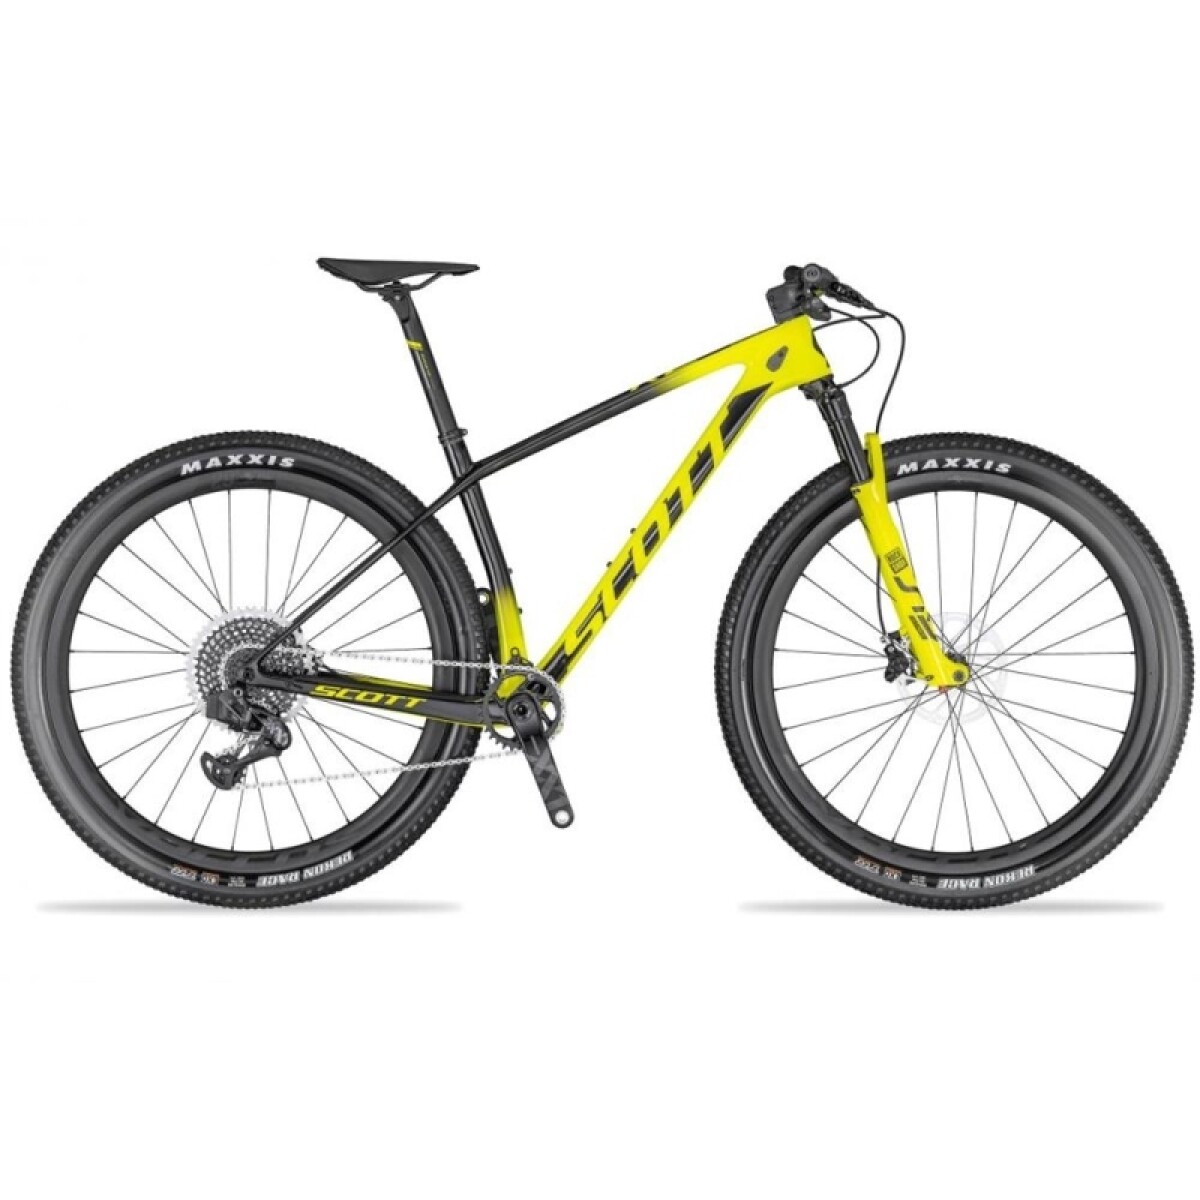 Bicicleta Scott Mtb Scale 900 Wx Axs 2020 R.29 - Talle L 